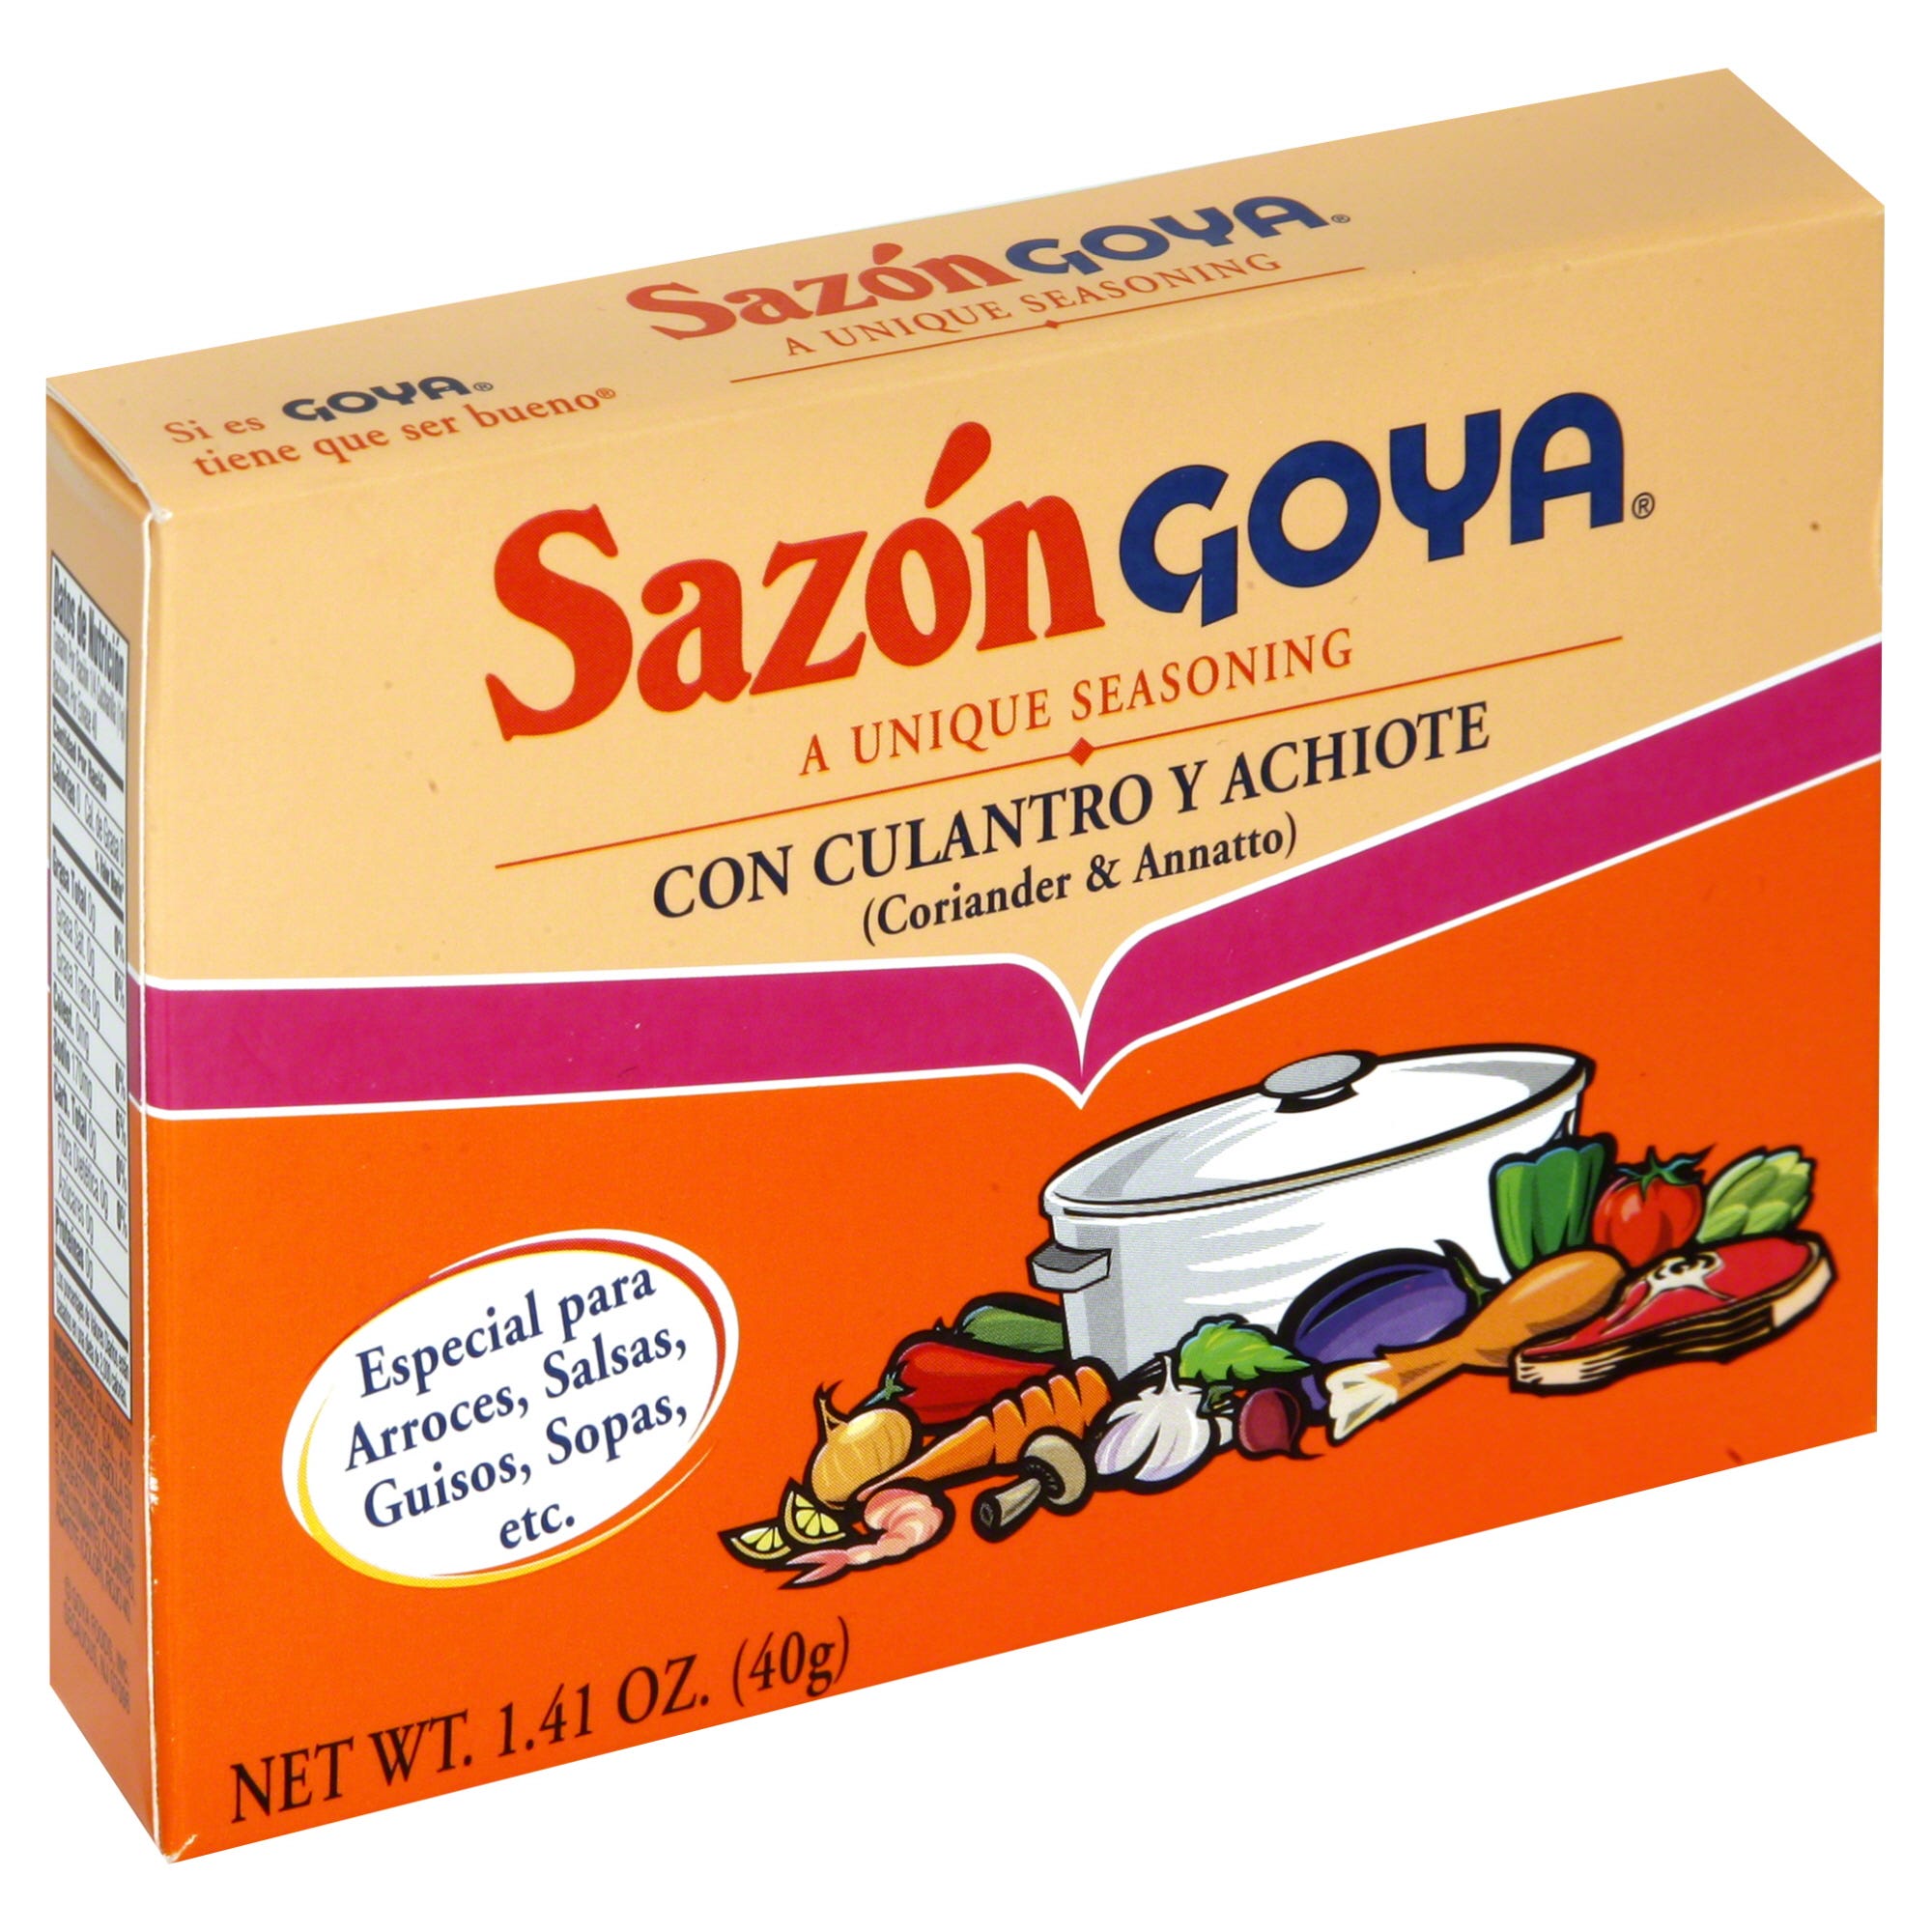 Sazon Goya Seasoning, Coriander & Annatto - 1.41 oz